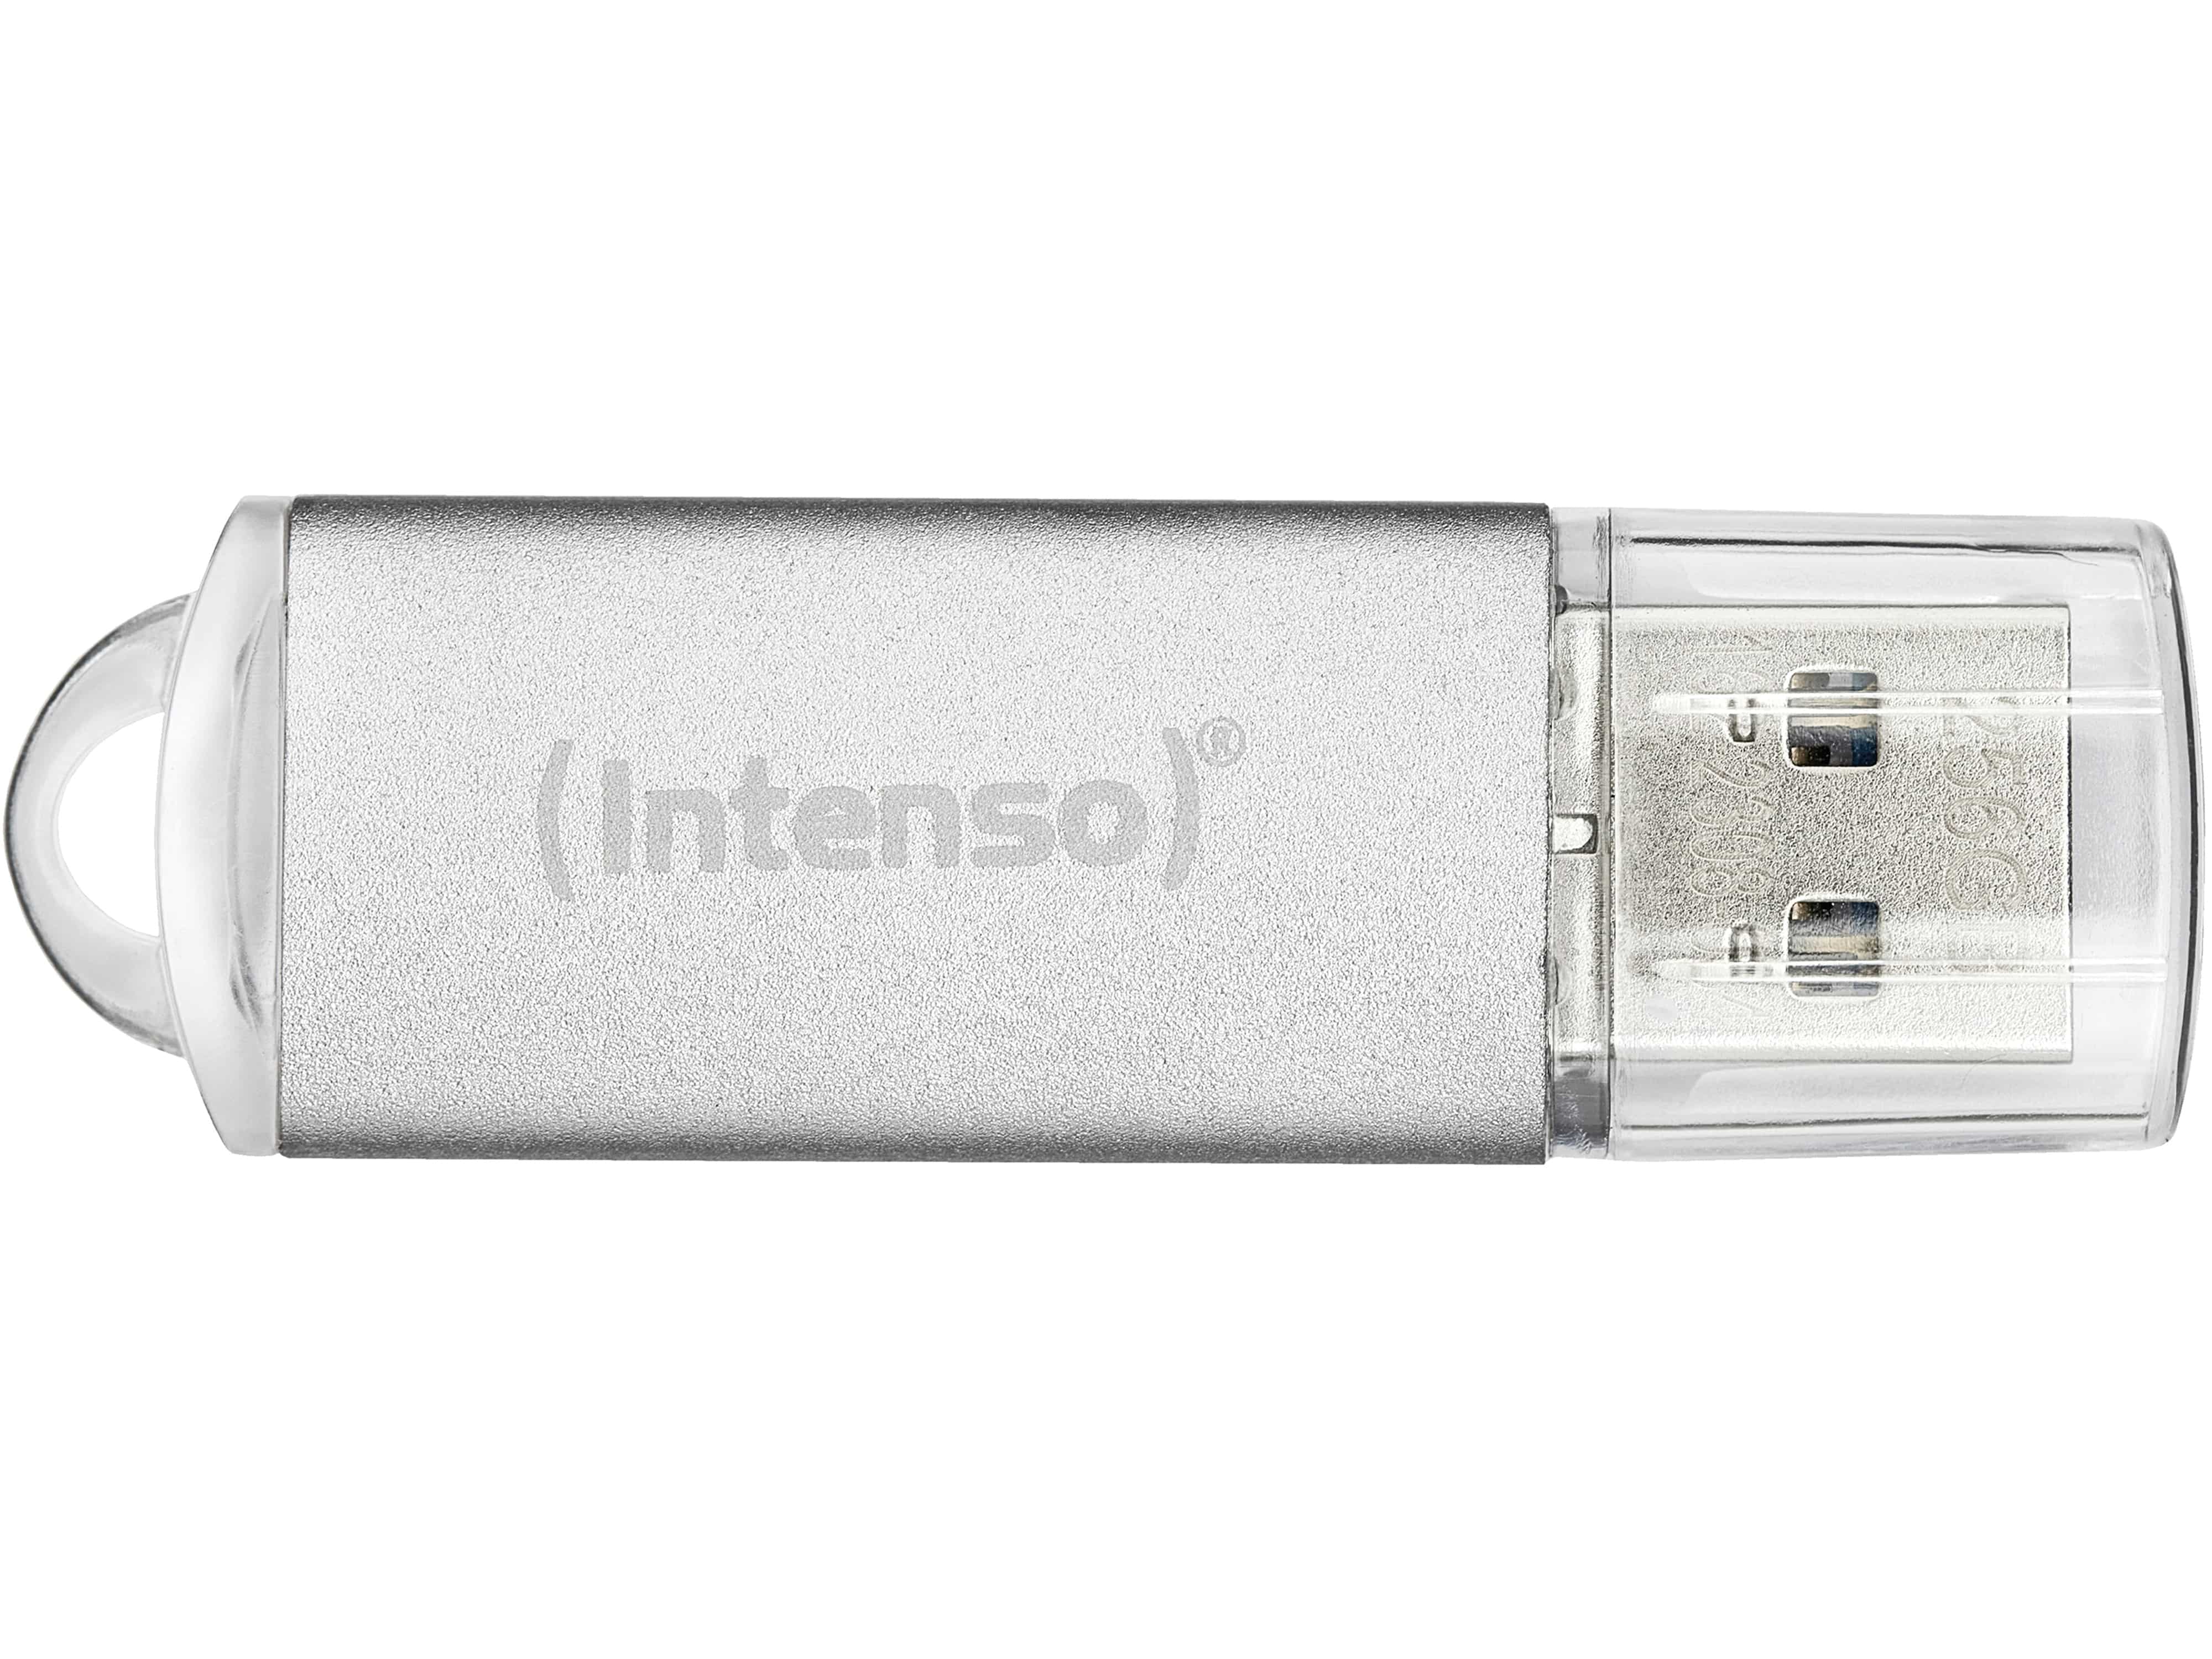 INTENSO USB-Stick Jet Line, USB-A, 64 GB